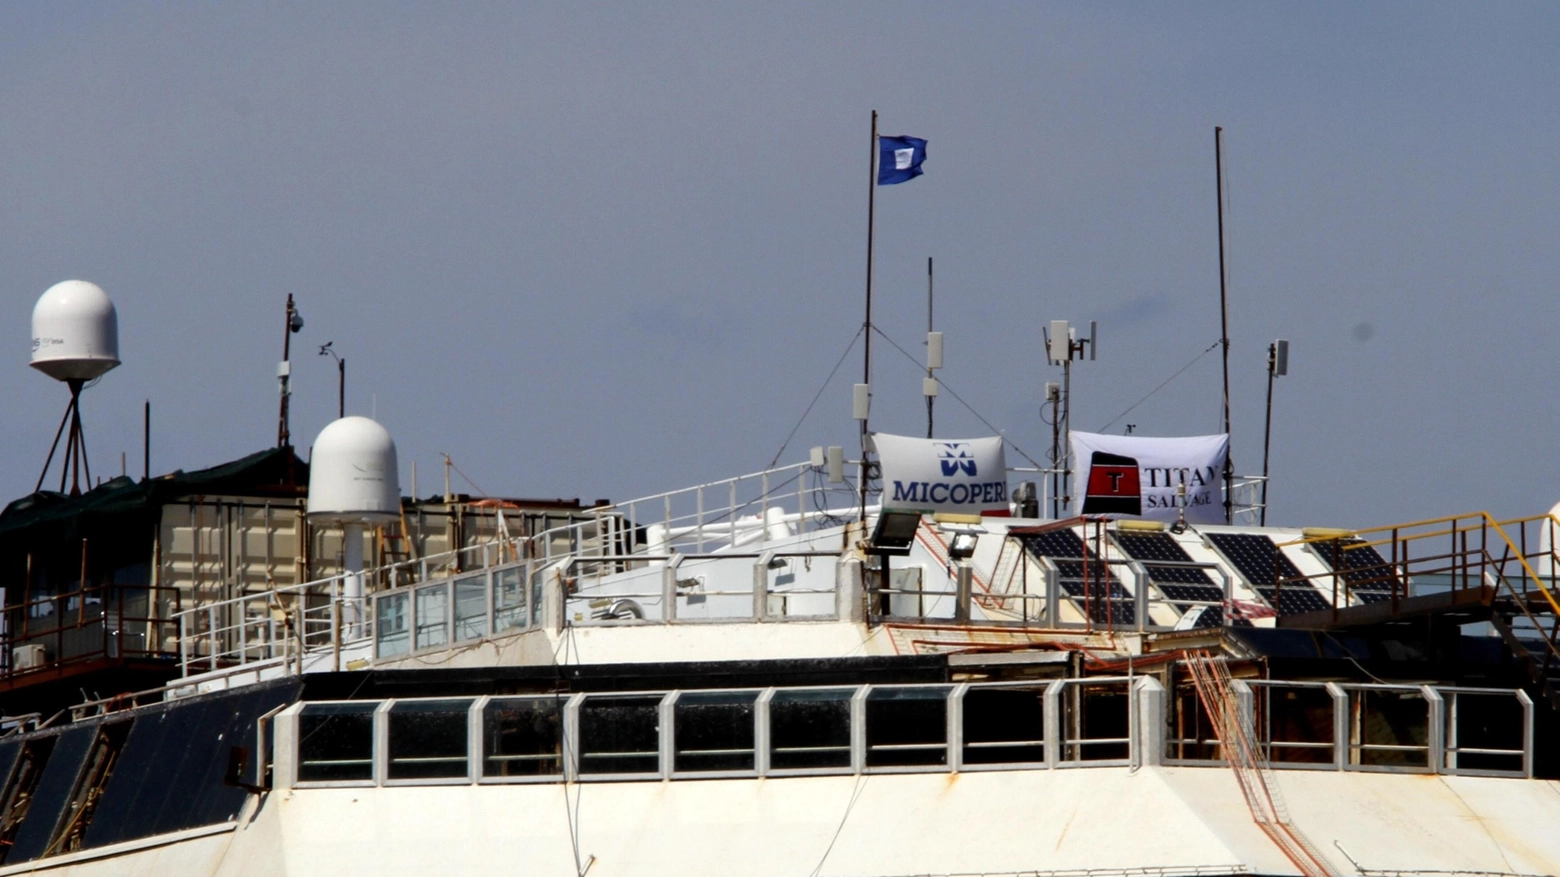 Issata la bandiera blu sulla Concordia (Ansa)